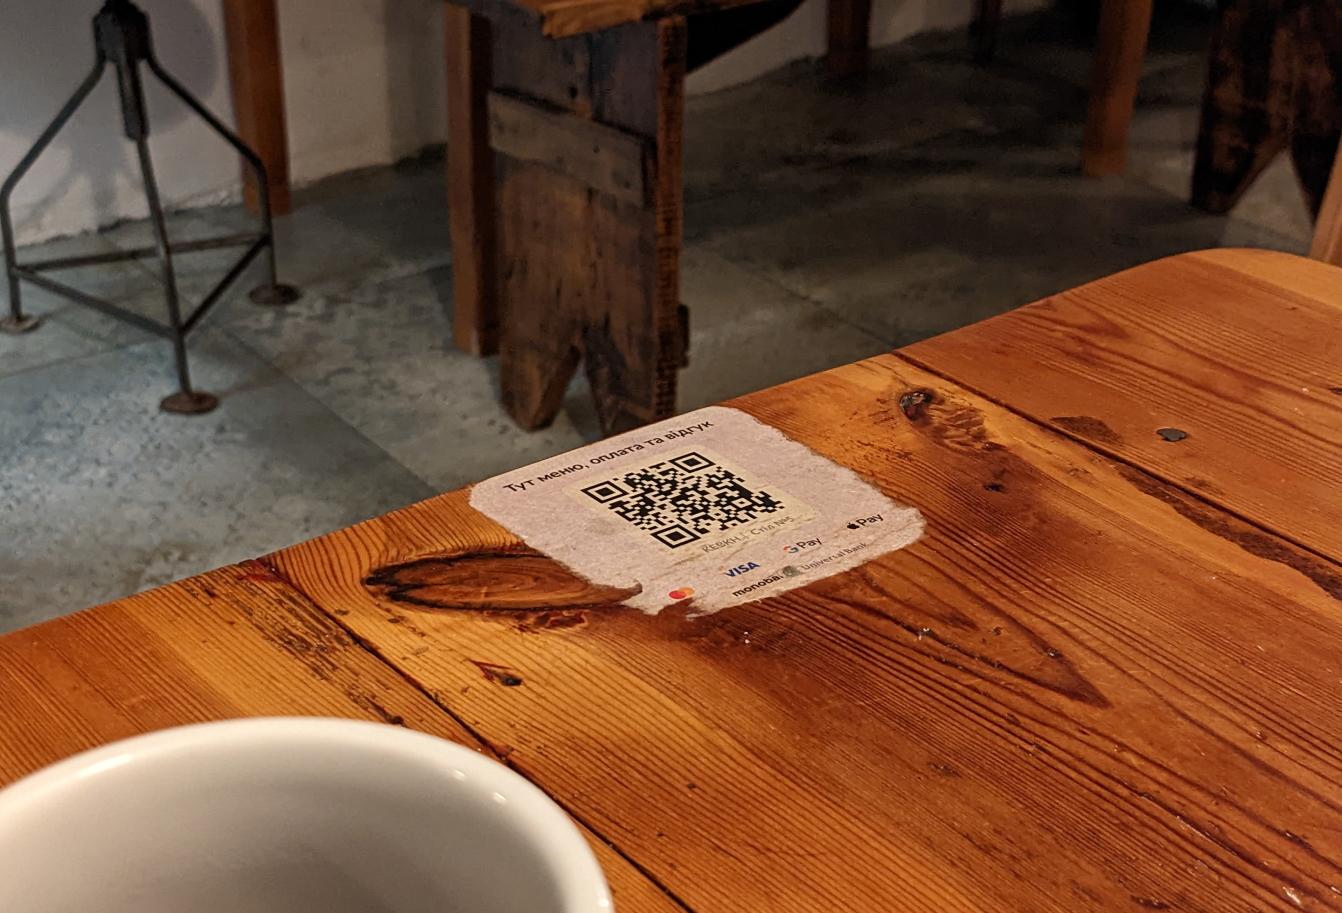 QR-код від Expirenza by mono для розрахунків, меню і відгуків в кафе. Фото: Богдан Вальд